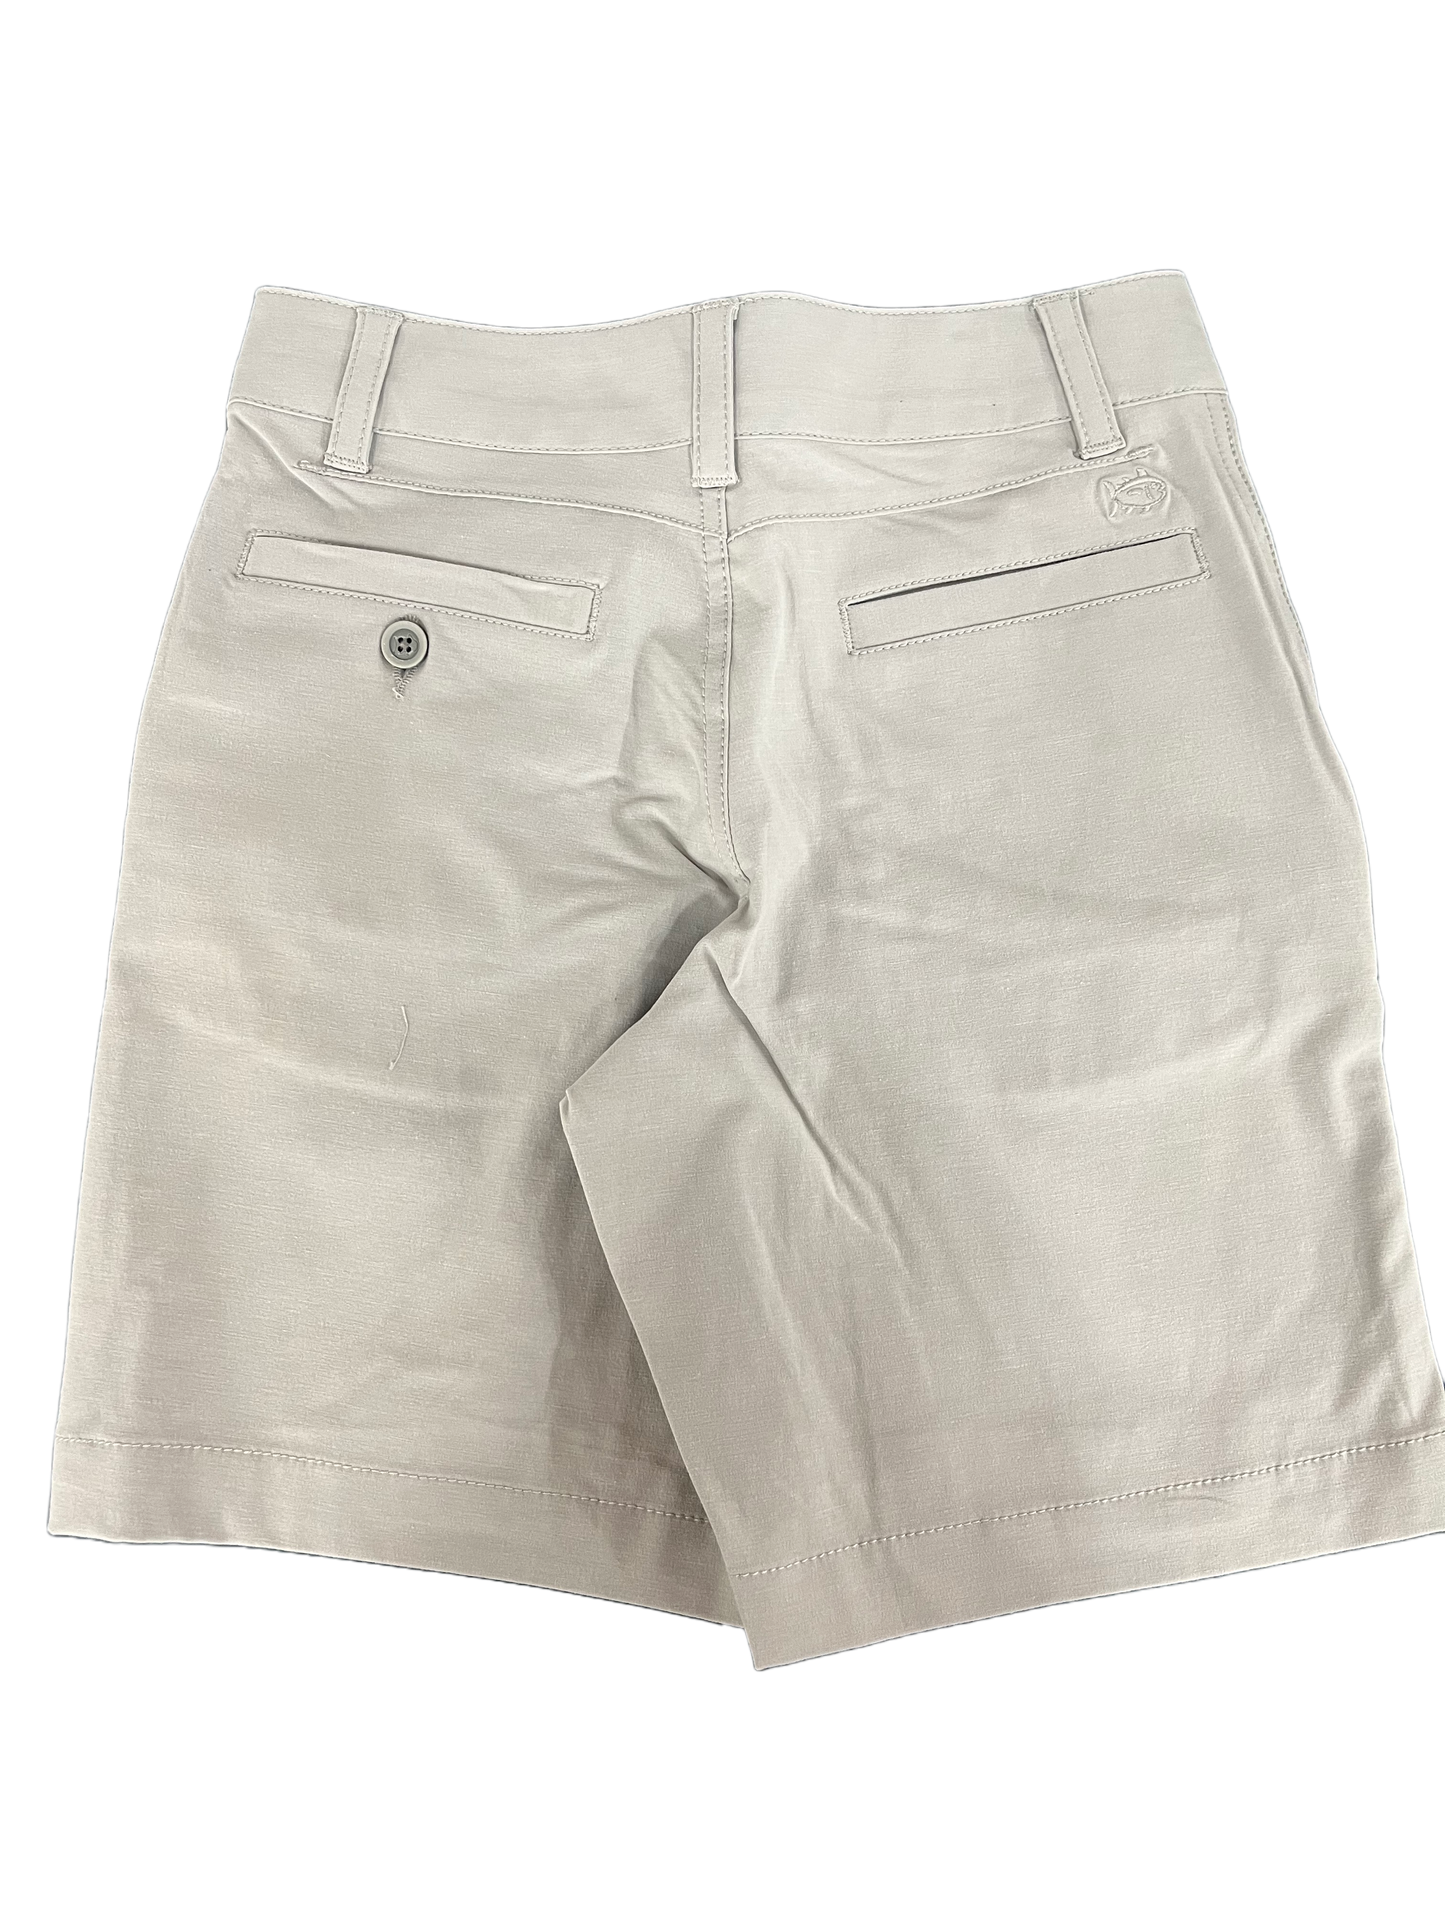 Gulf Shorts- Stone